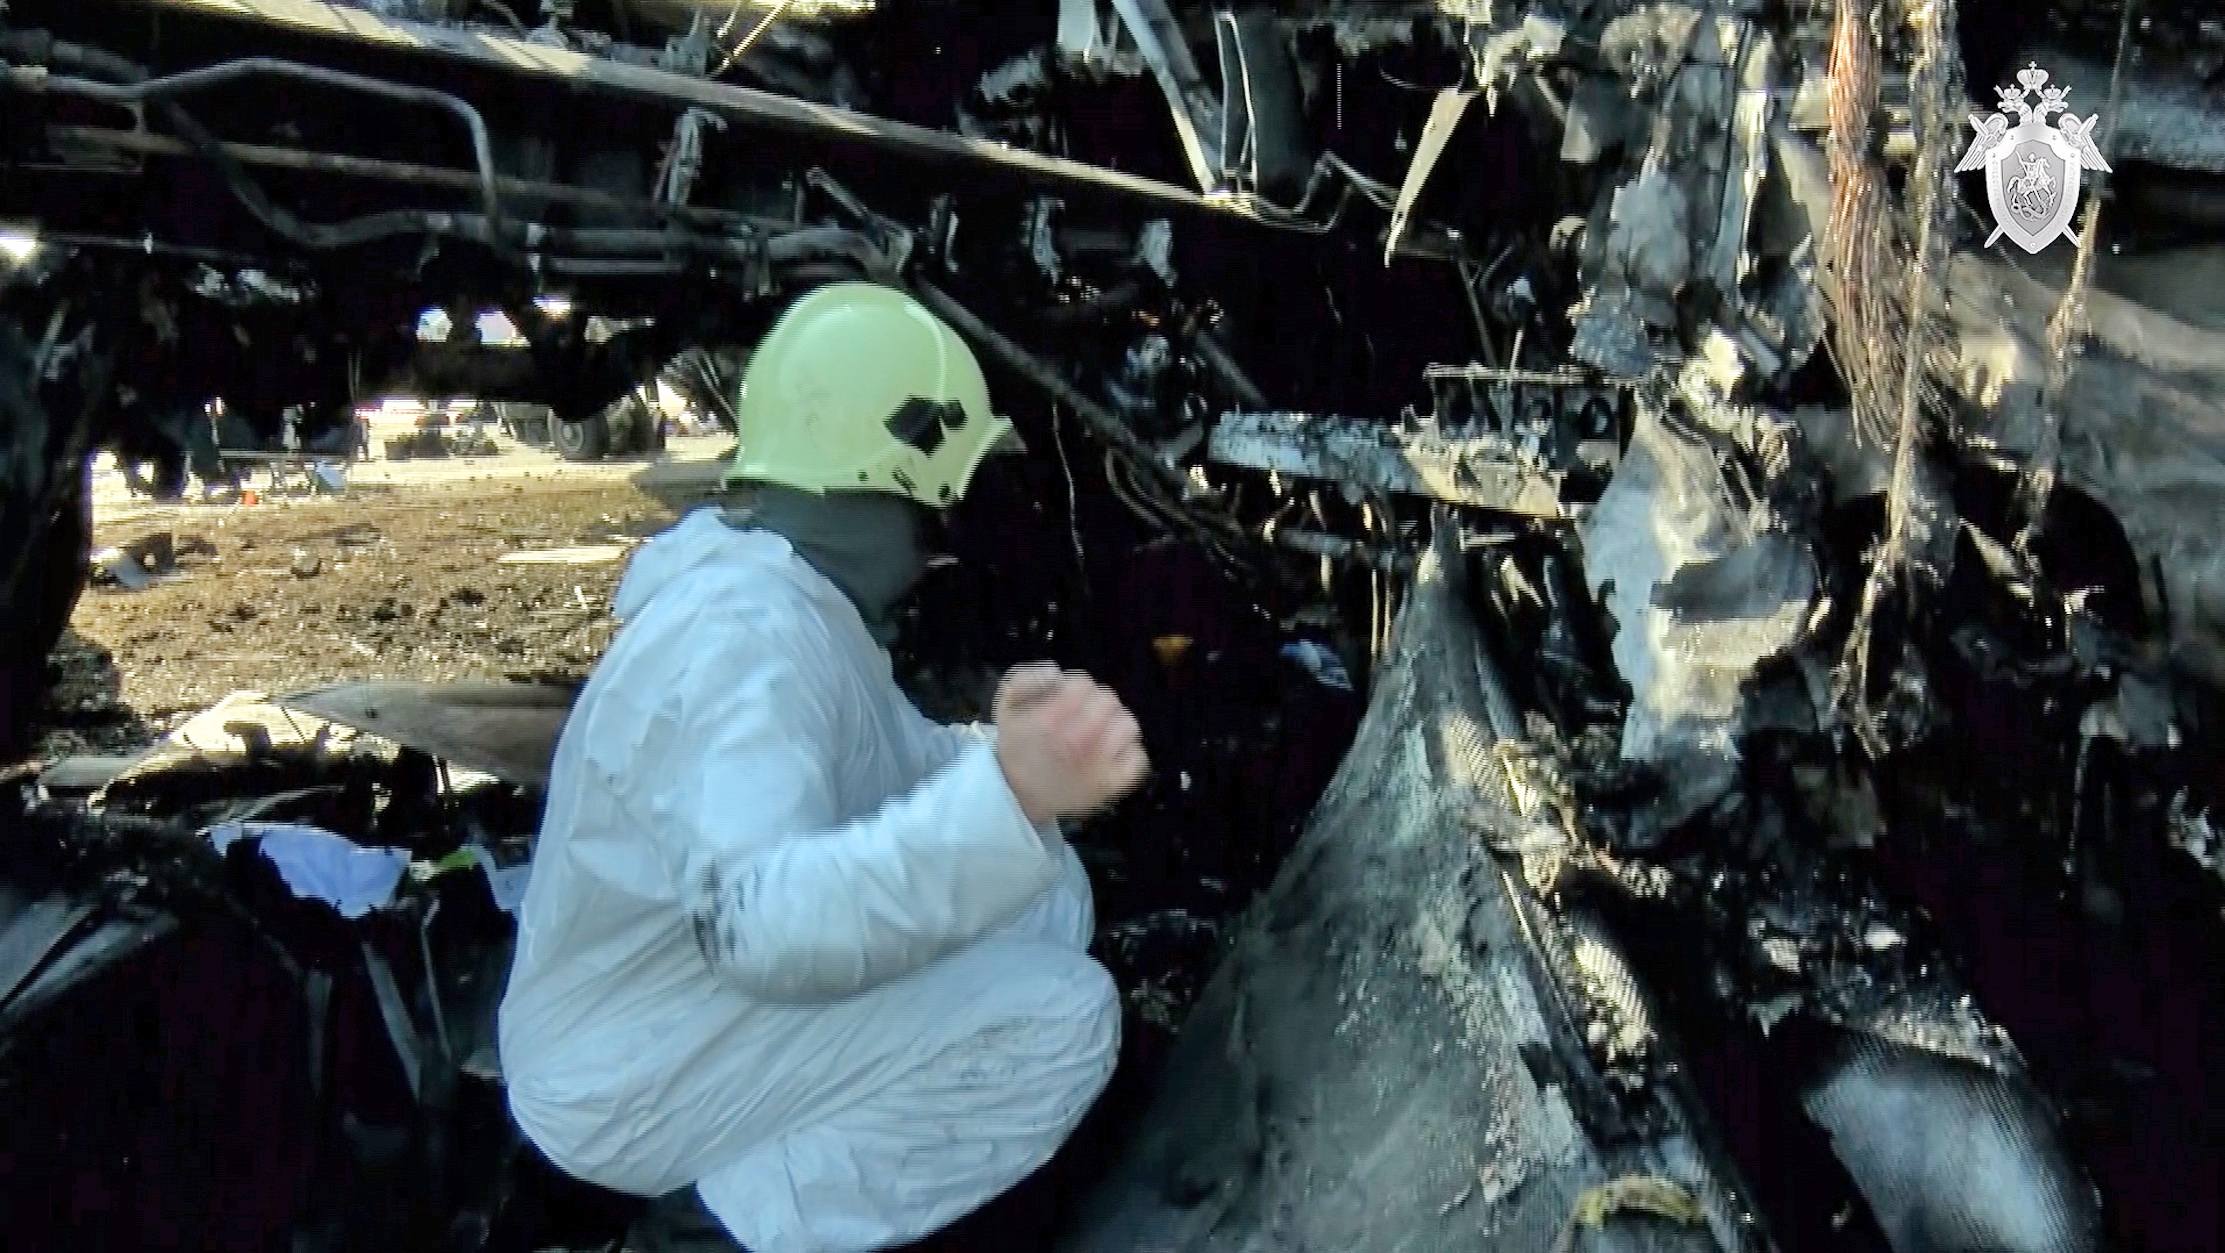 日航客机相撞起火后残骸：机身变焦黑废墟 仅剩机翼机尾较明显 - 民用航空网